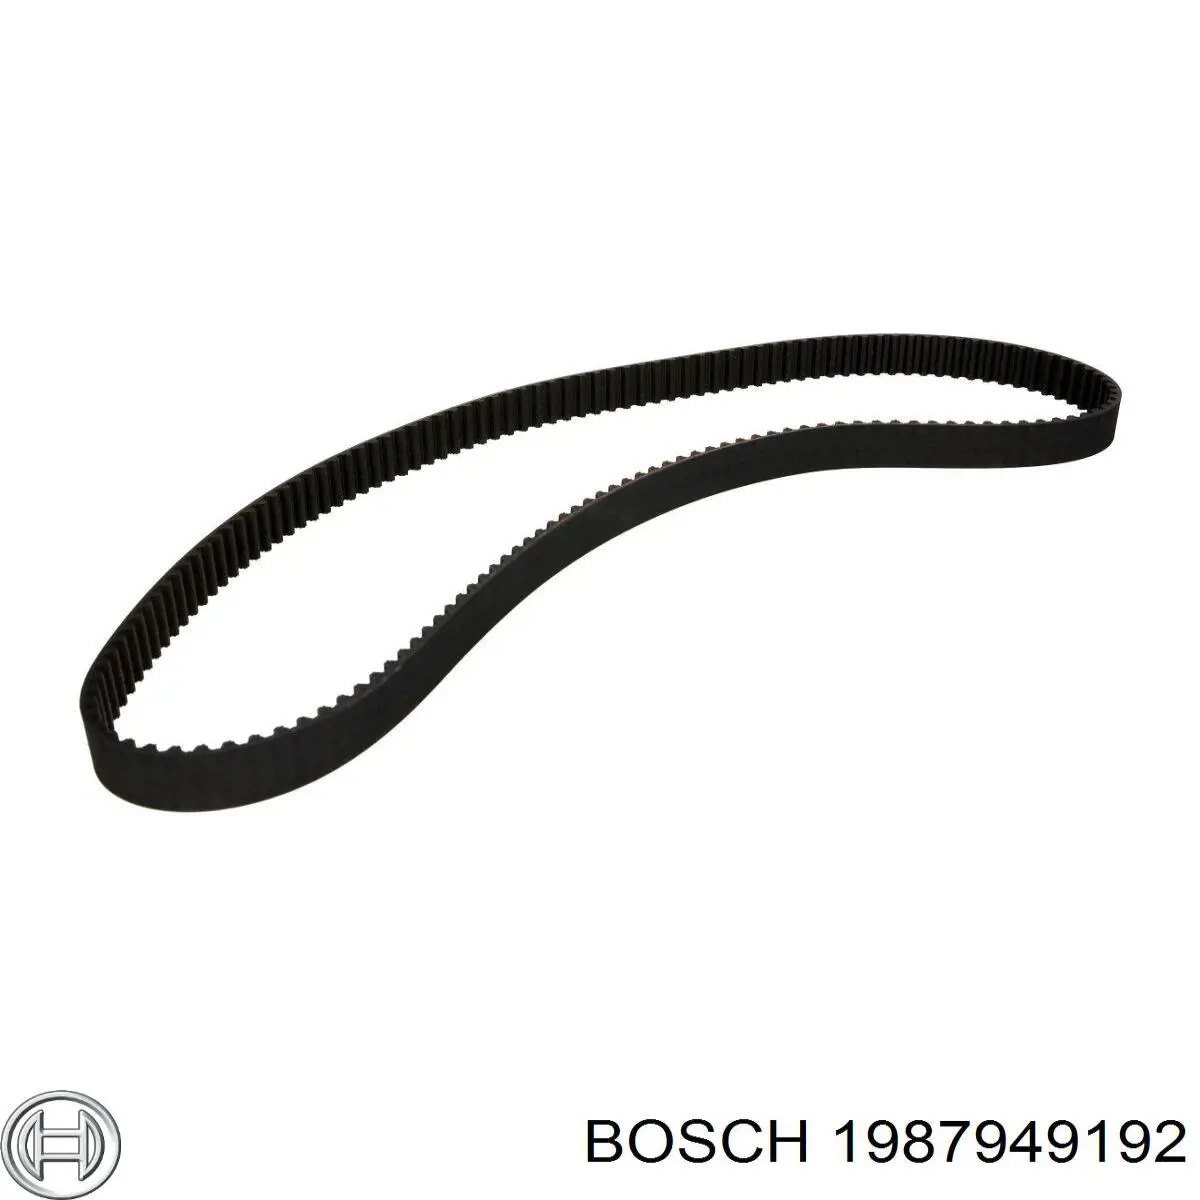 1987949192 Bosch correa distribucion